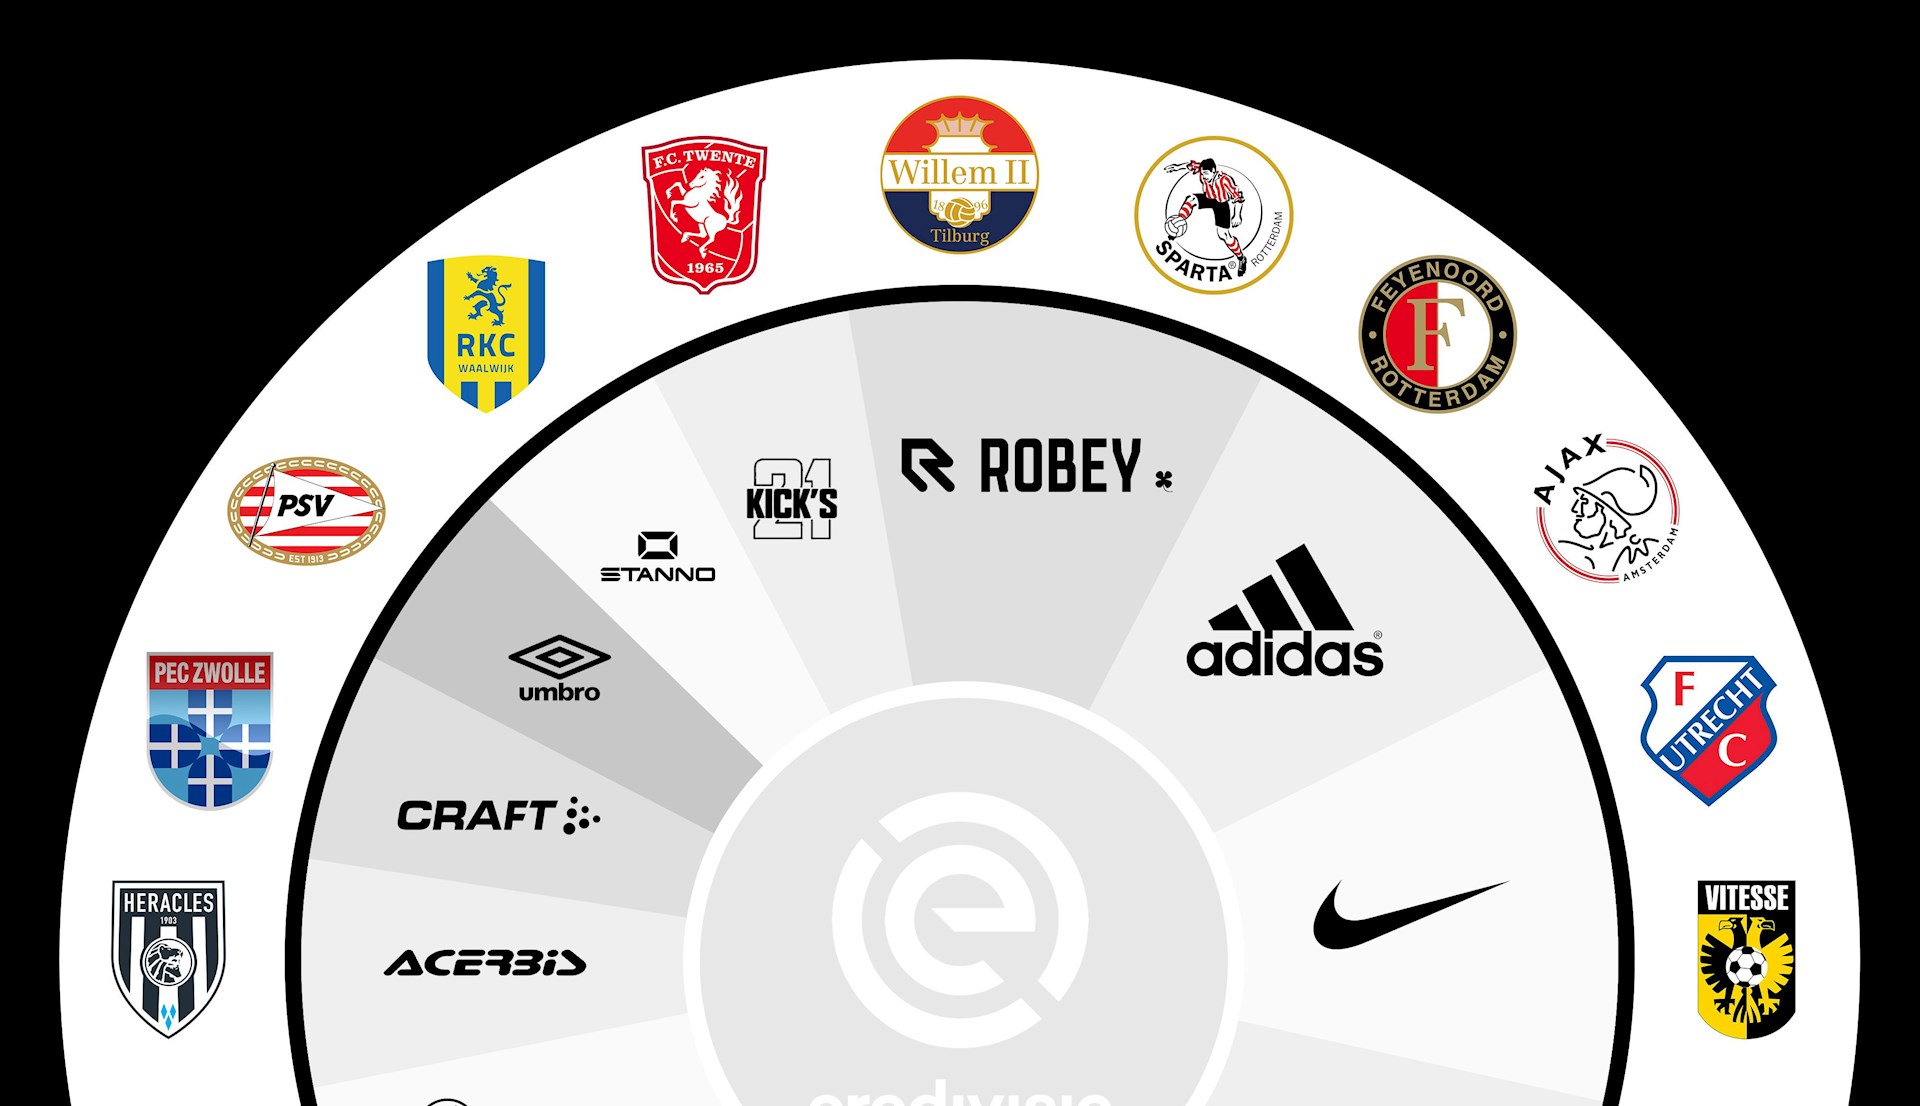 Monarchie spoelen Autonomie Dit zijn de kledingsponsoren in de Eredivisie in 2019-2020 - Voetbalshirts .com